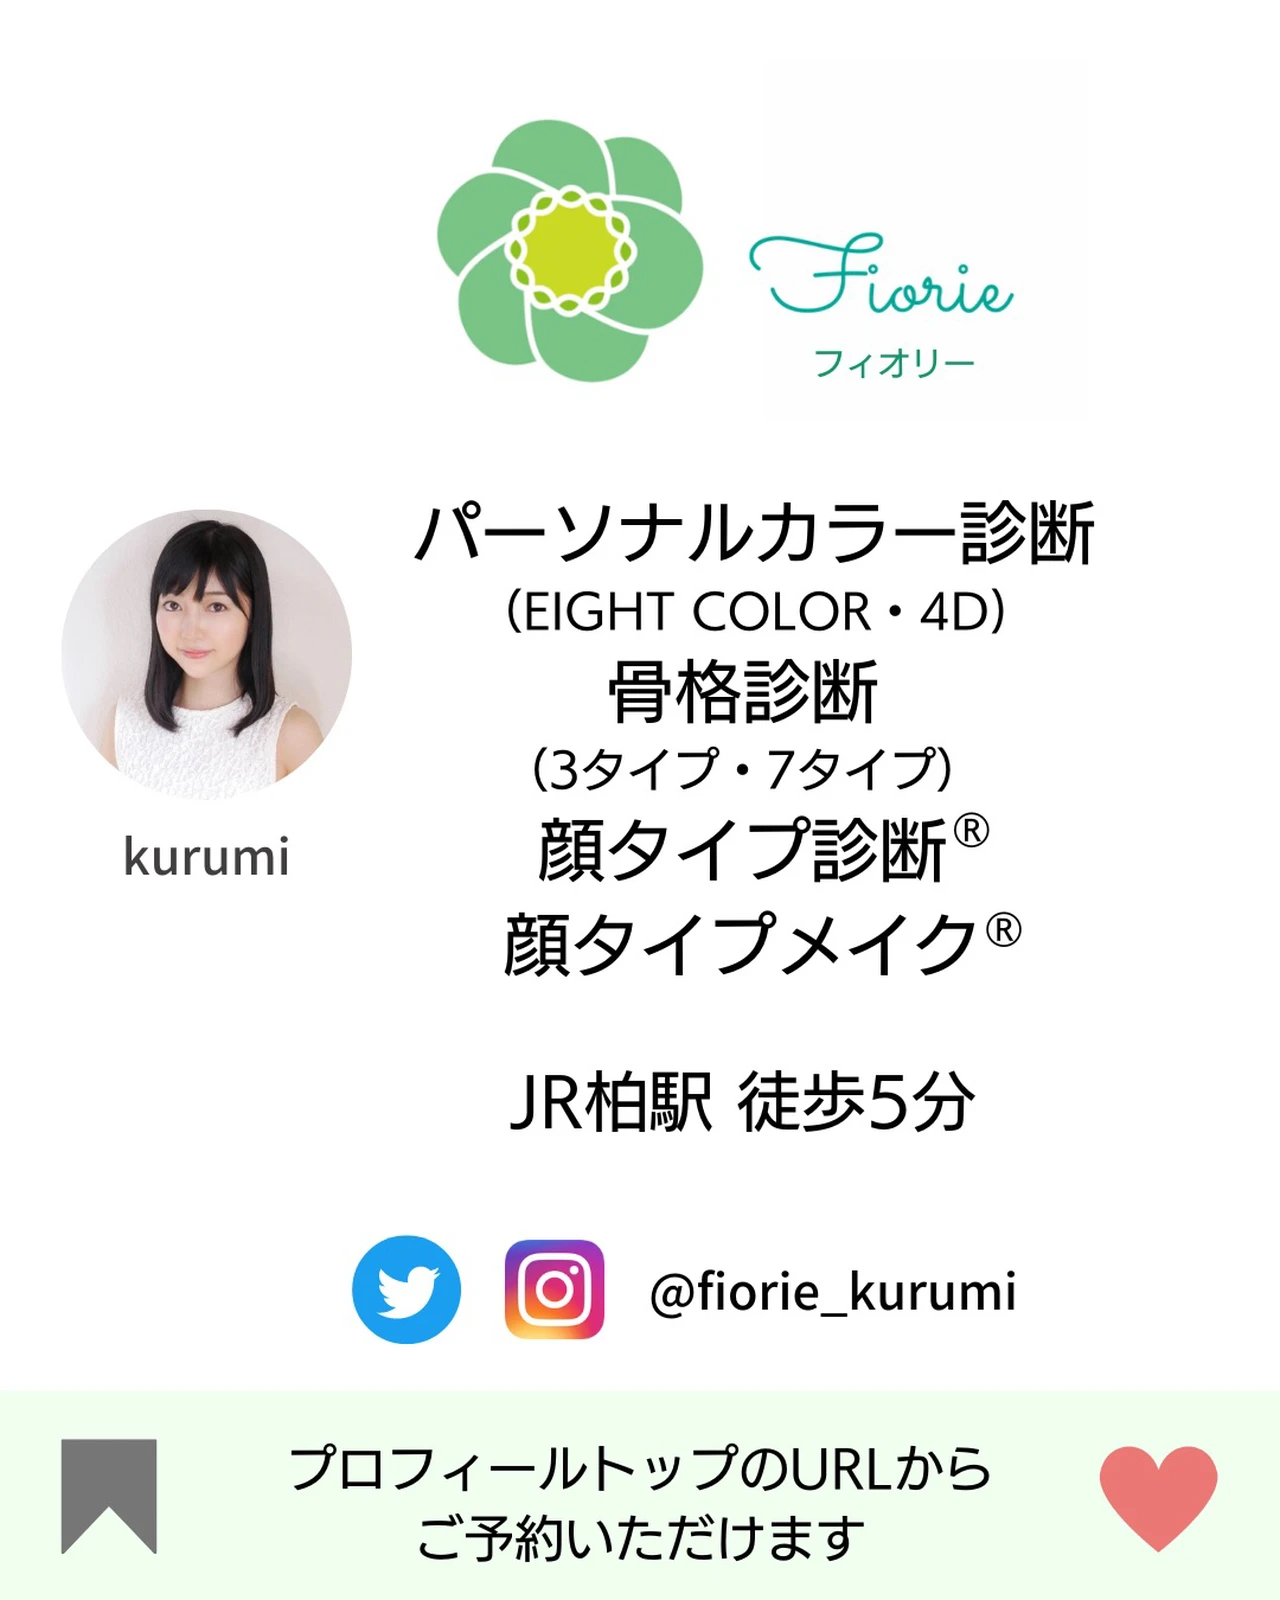 今話題の7タイプ骨格診断とは Kurumi イメコンが投稿したフォトブック Lemon8